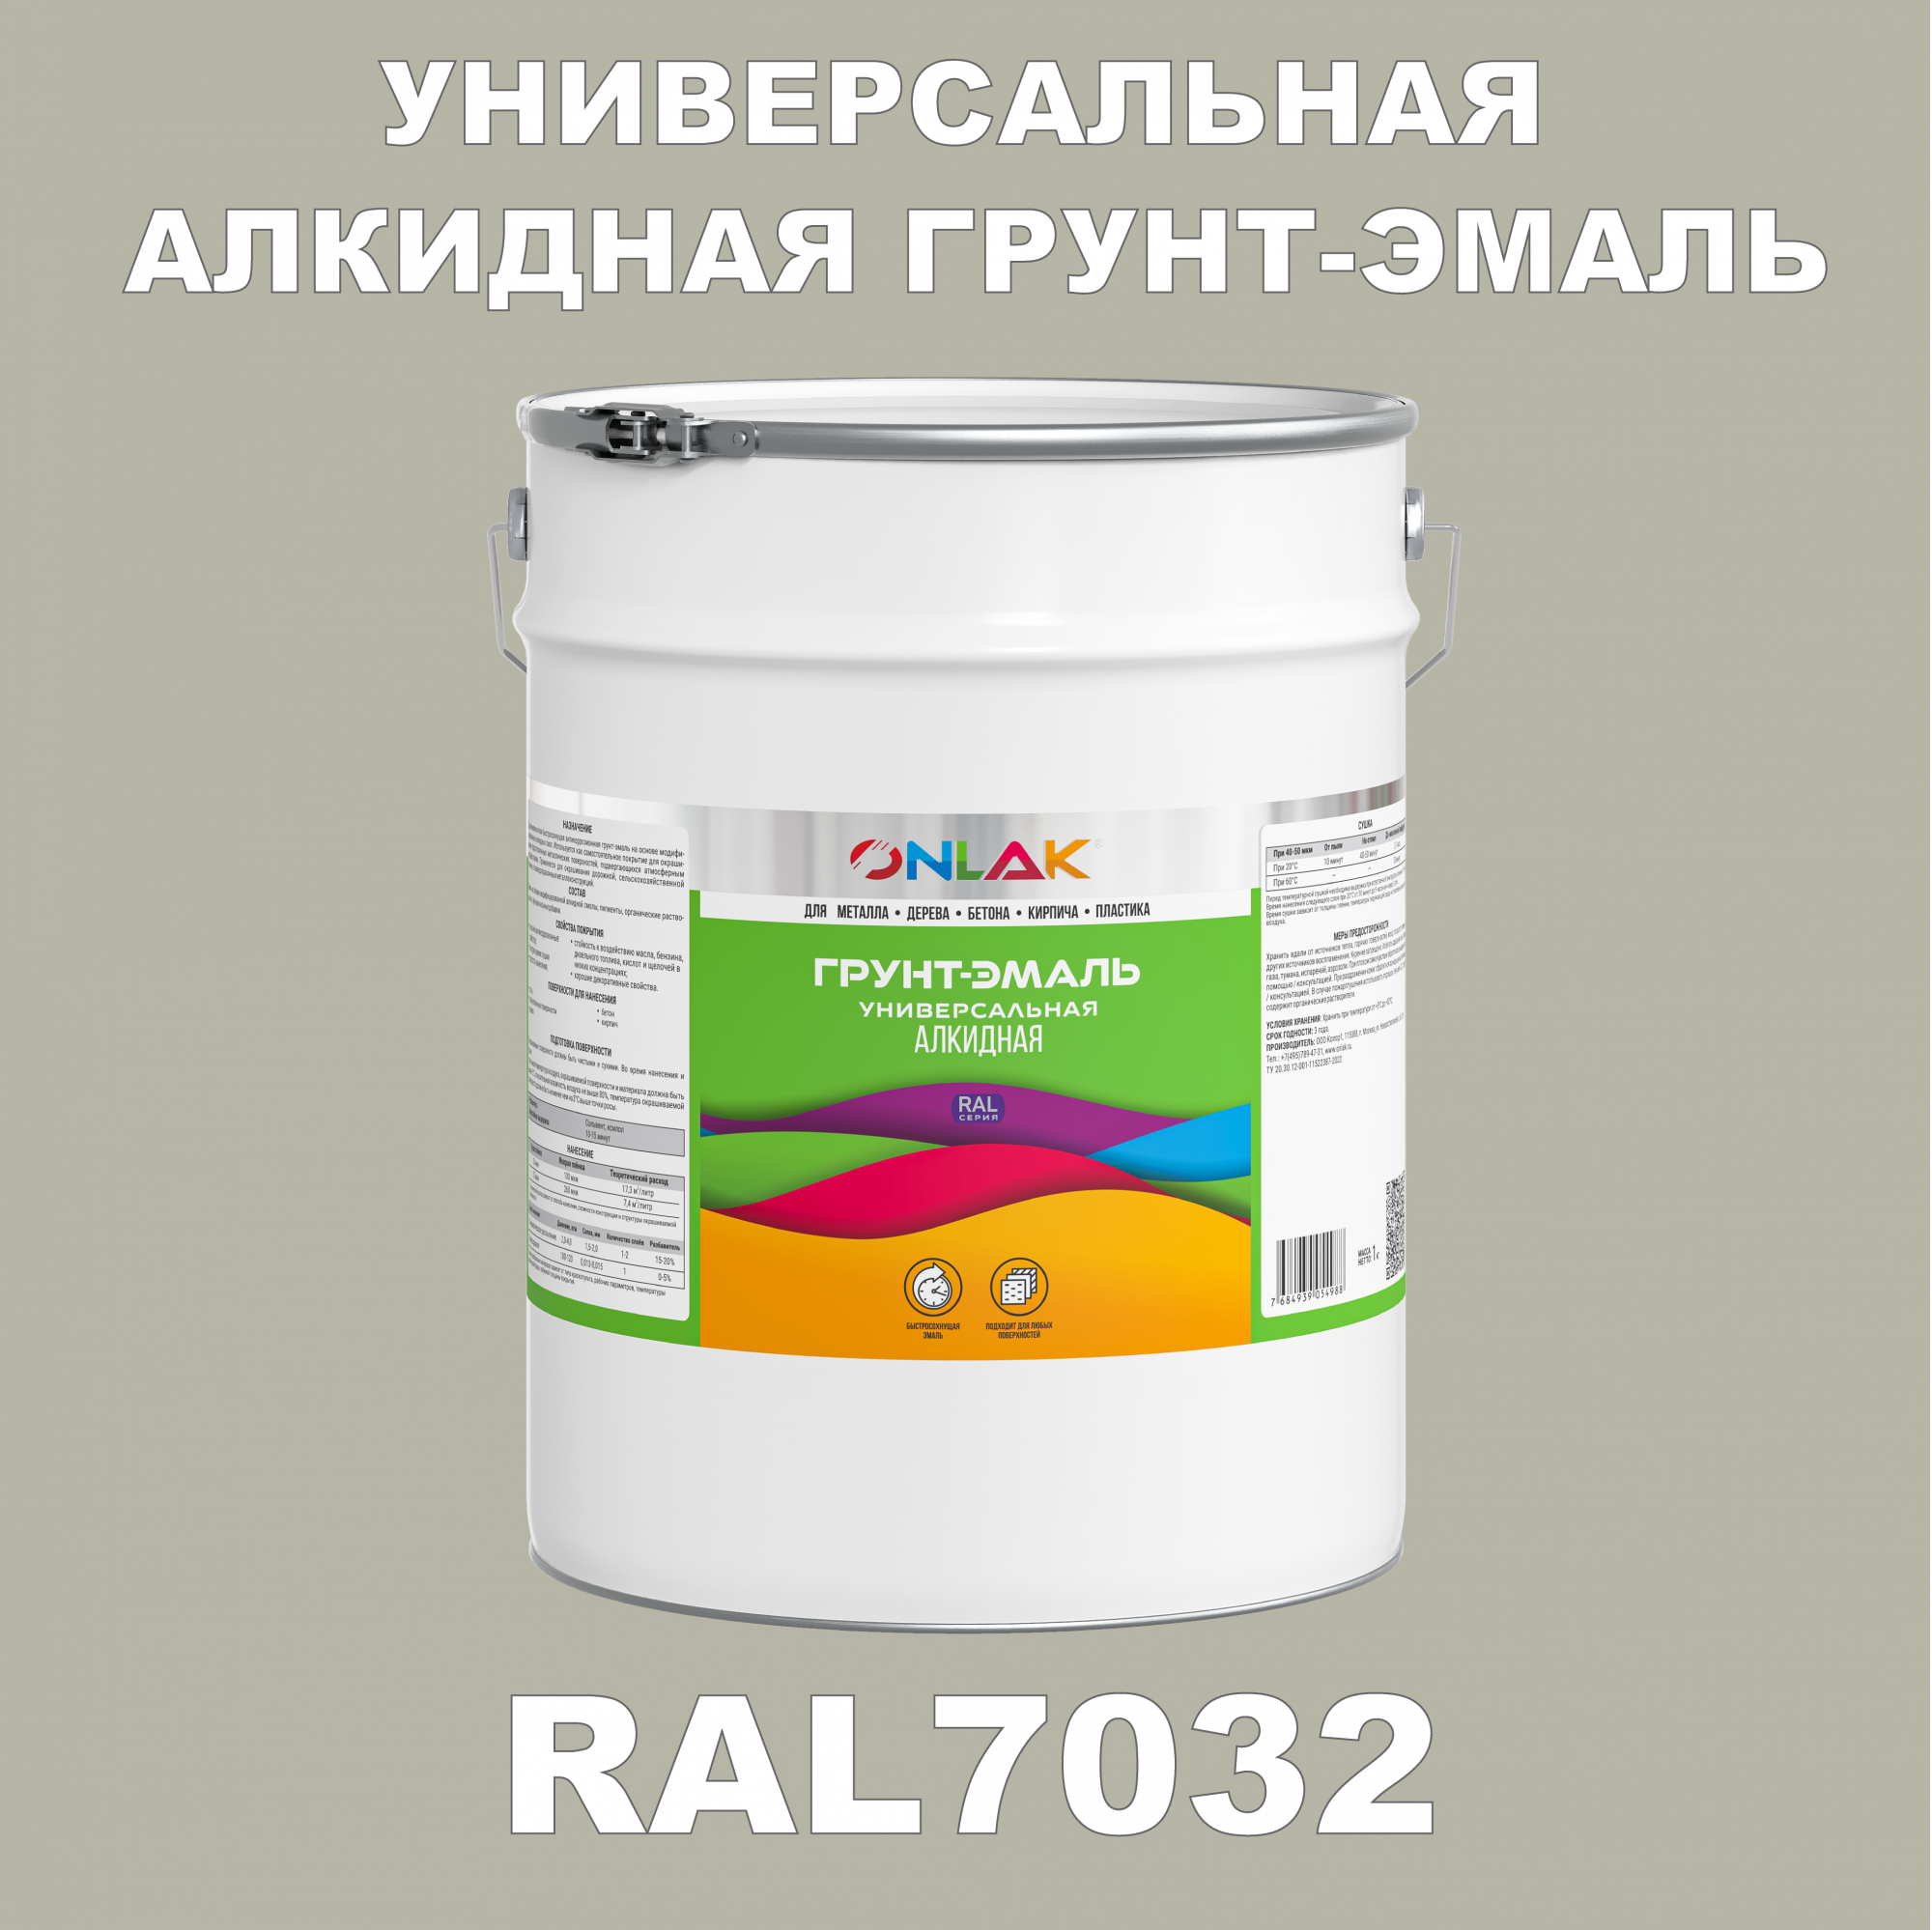 Грунт-эмаль ONLAK 1К RAL7032 антикоррозионная алкидная по металлу по ржавчине 20 кг грунт эмаль yollo по ржавчине алкидная зеленая 0 9 кг